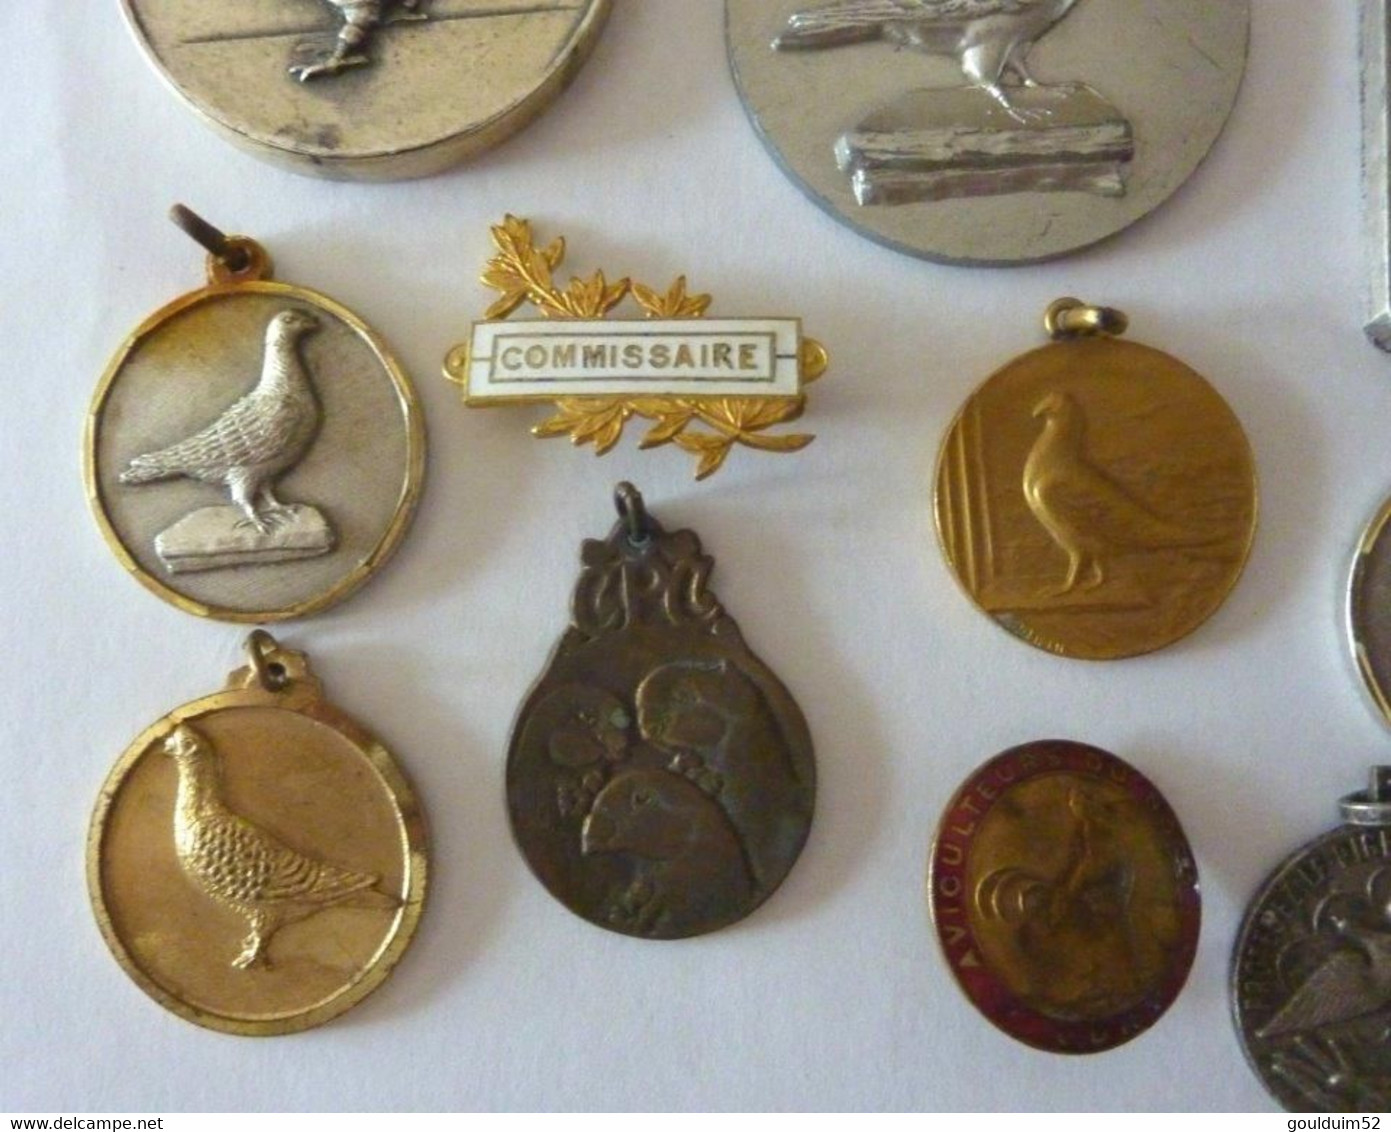 Lot de 28 médailles sur la Colombophilie